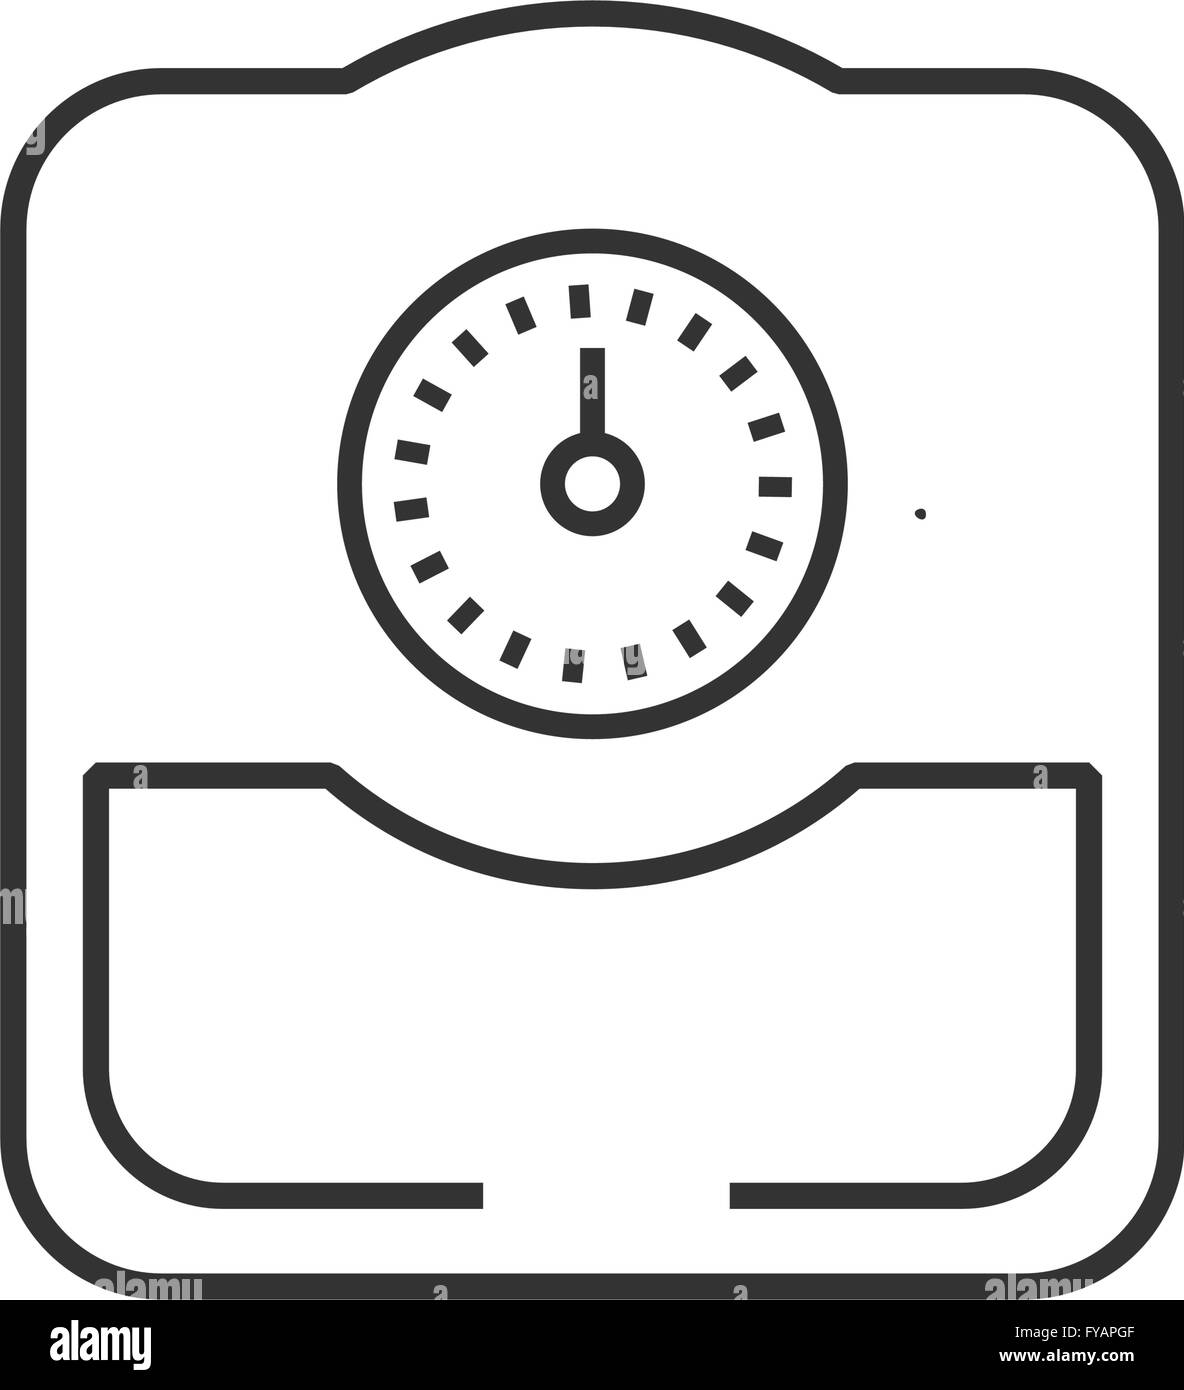 https://c8.alamy.com/comp/FYAPGF/line-icon-medical-device-icon-bathroom-scales-FYAPGF.jpg